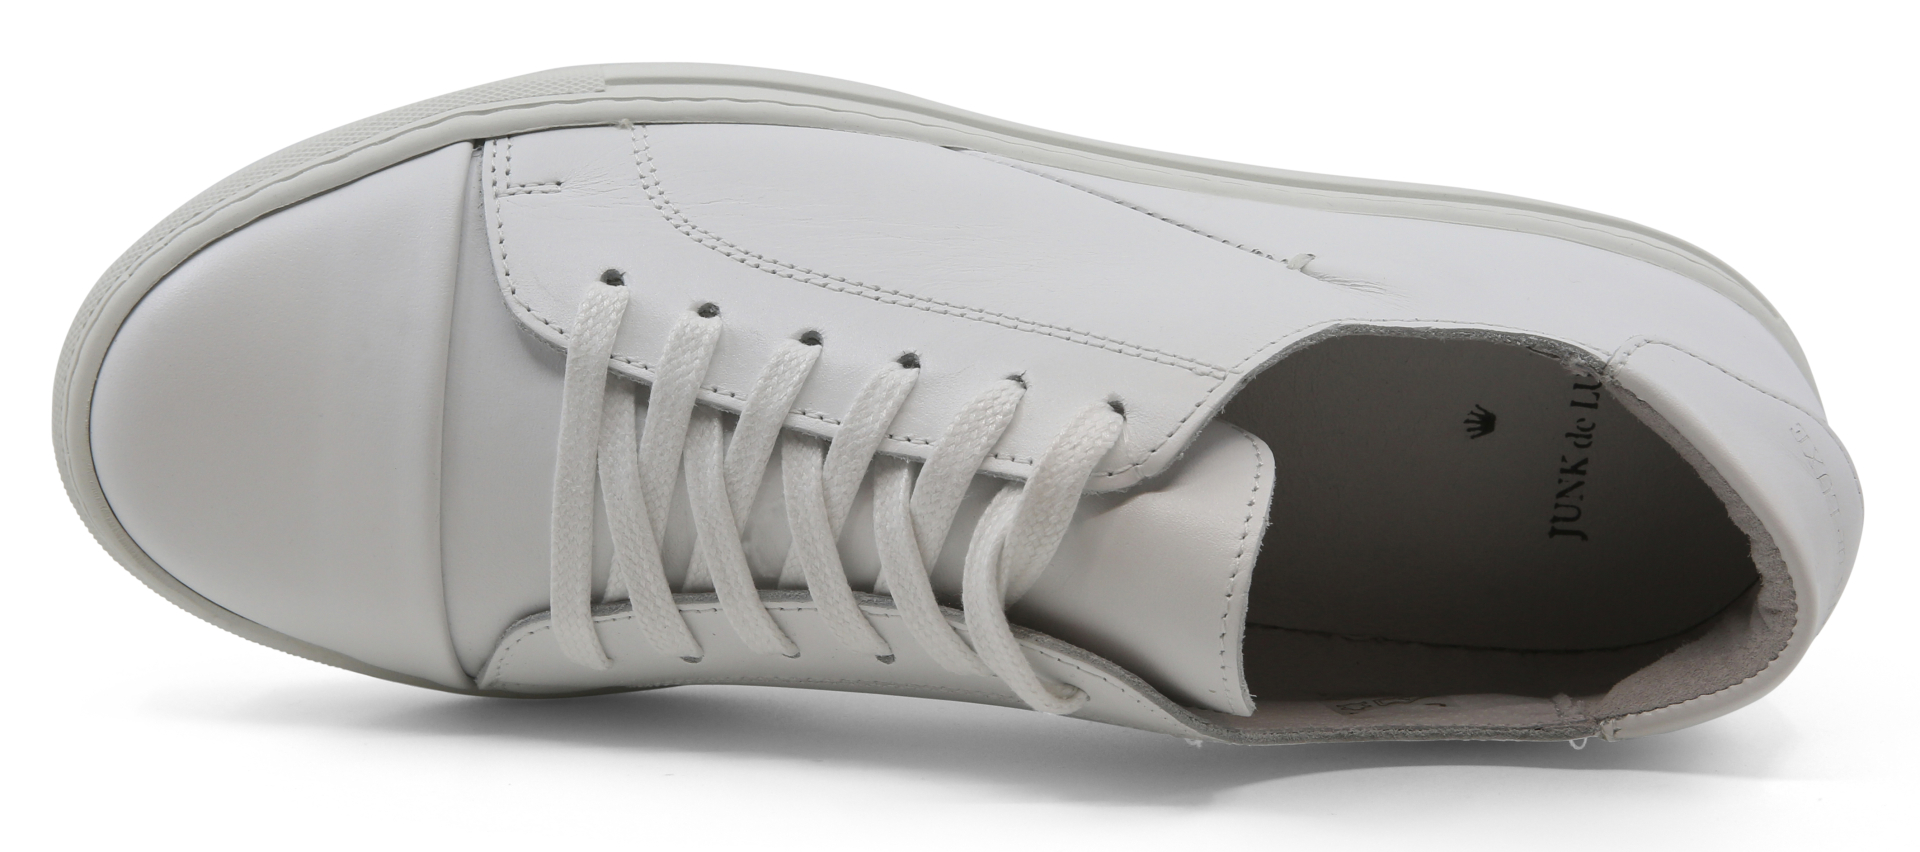 Junk de Luxe Sneakers vit / white